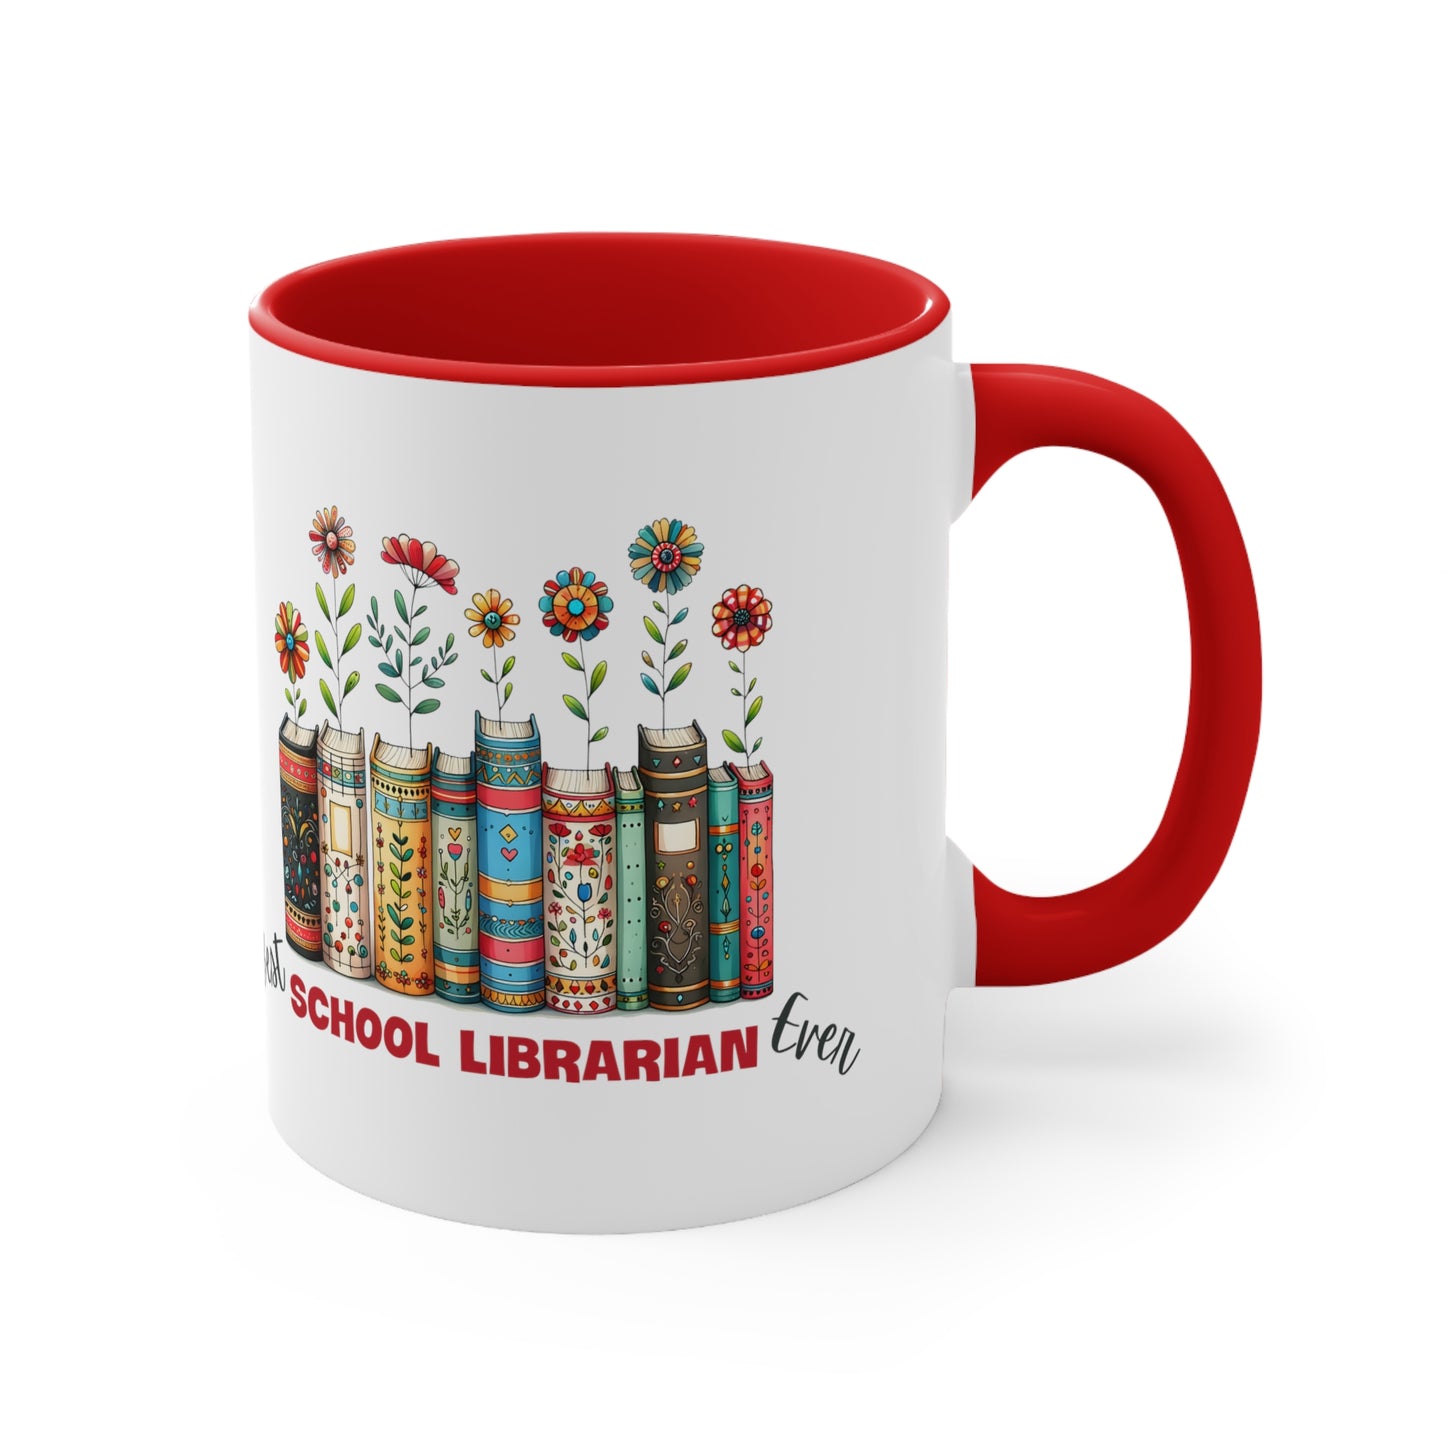 Best School Librarian Ever Coffee Mug, 11oz